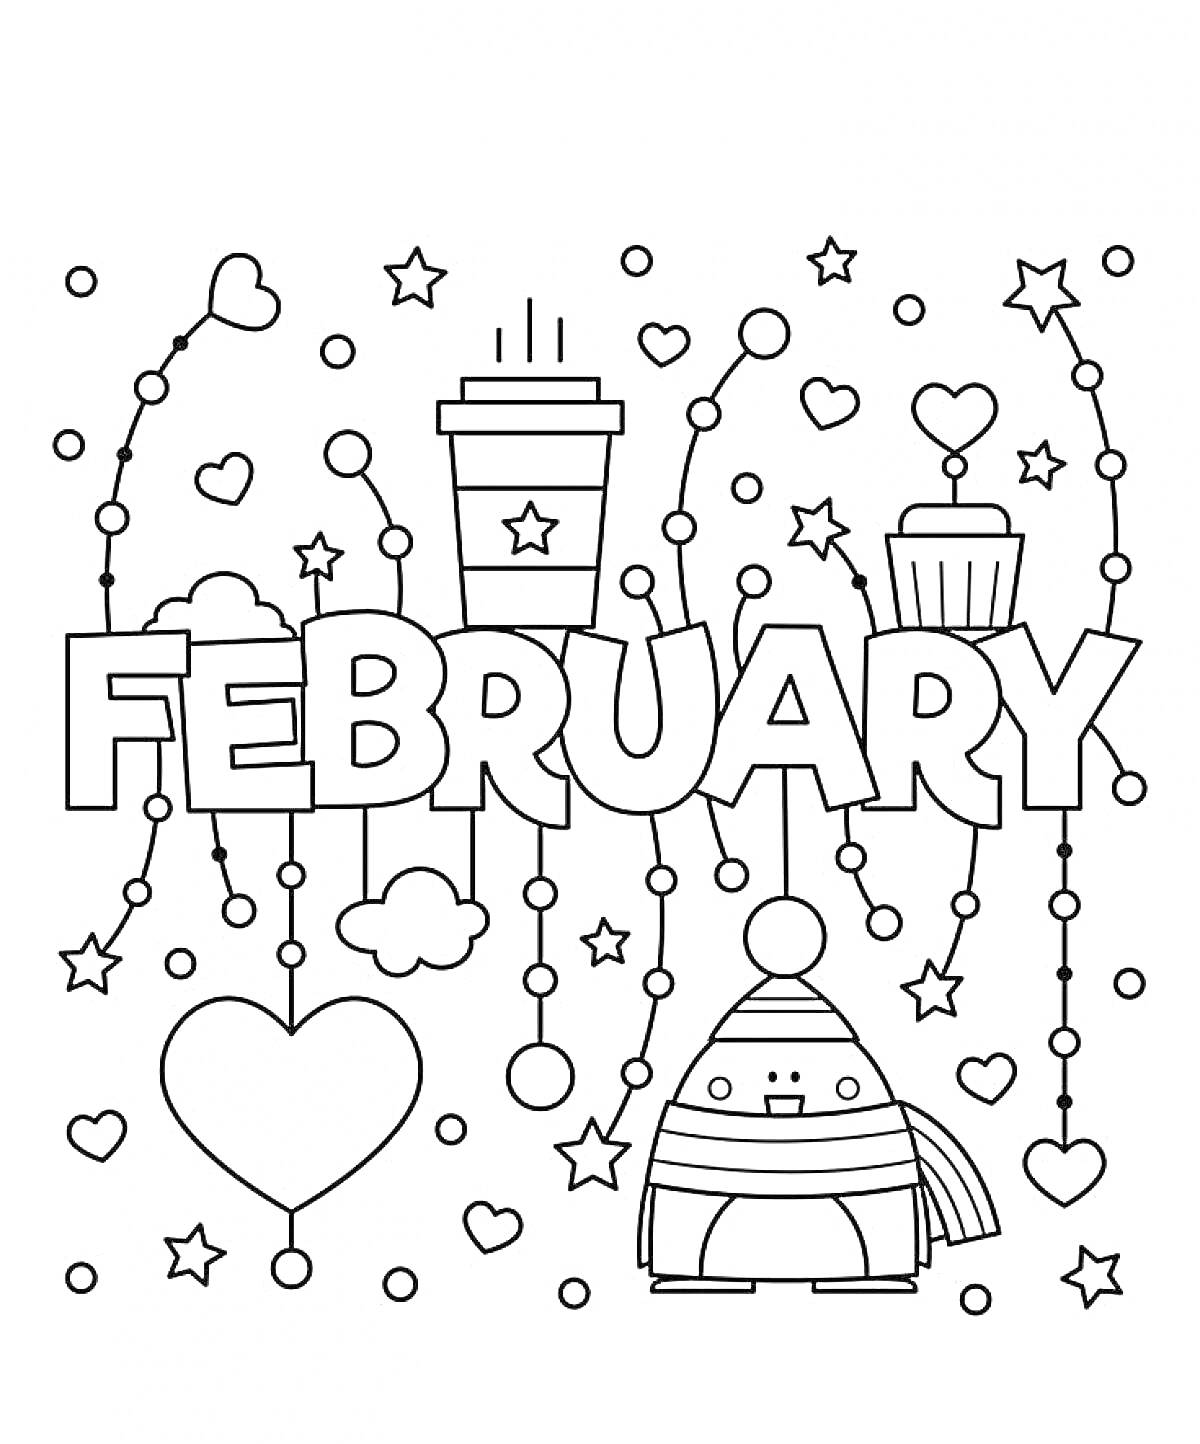 Раскраска Февраль с надписью, сердечками, звездочками, кружкой с горячим напитком, кексом и роботом в шапке